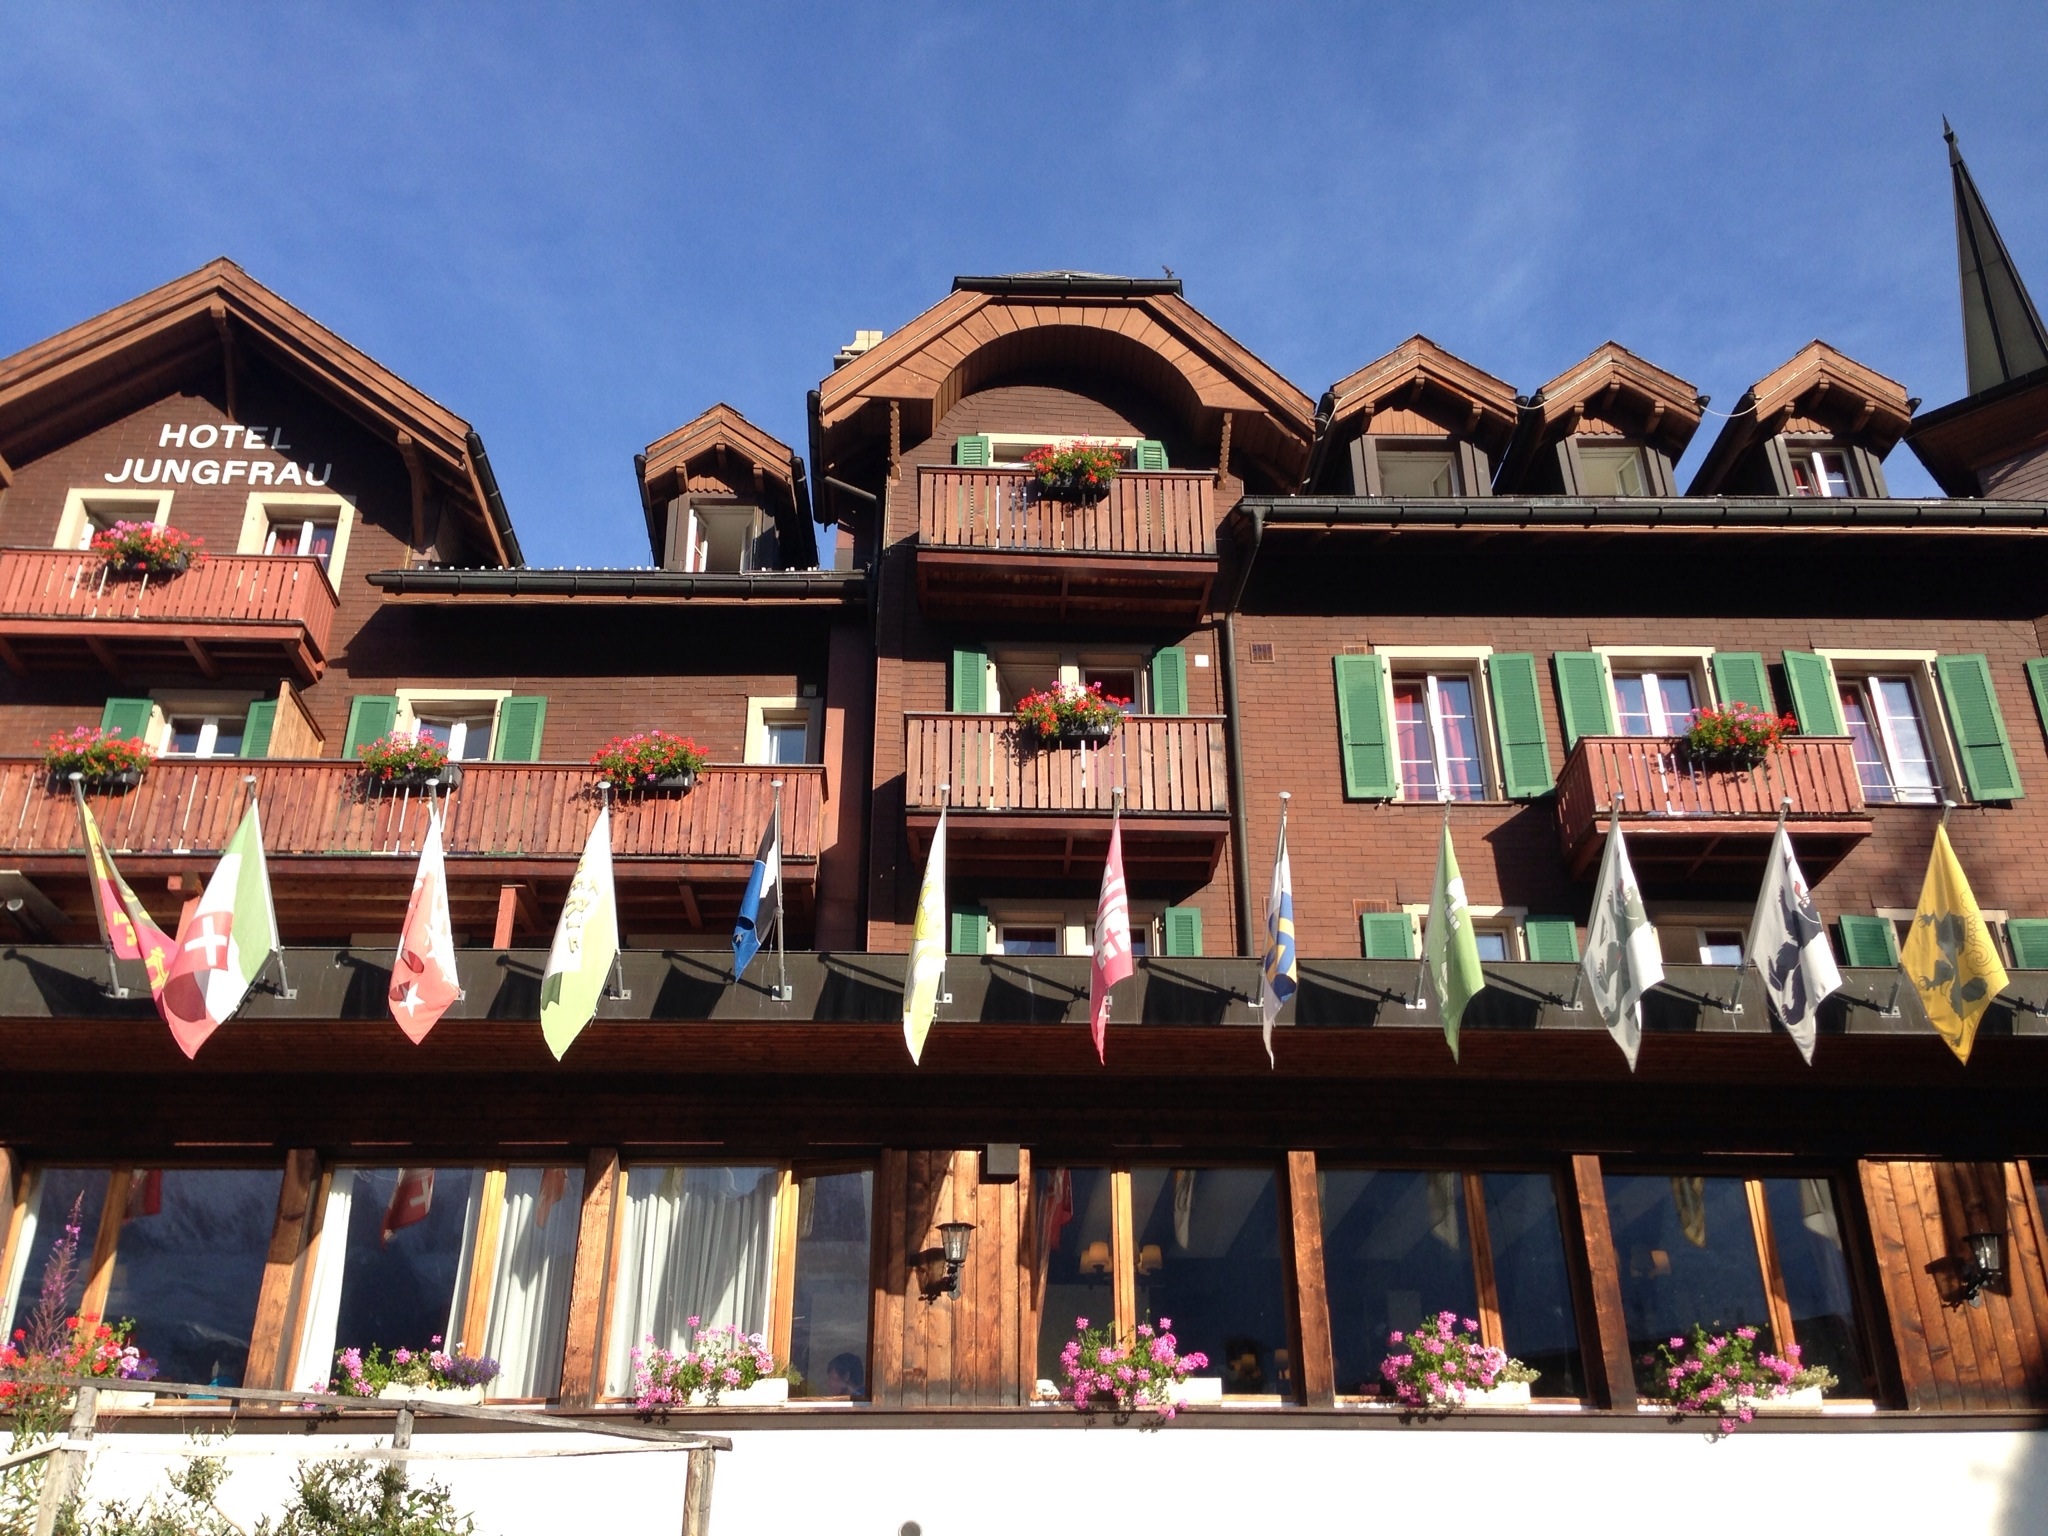 Hotel Jungfrau in Murren